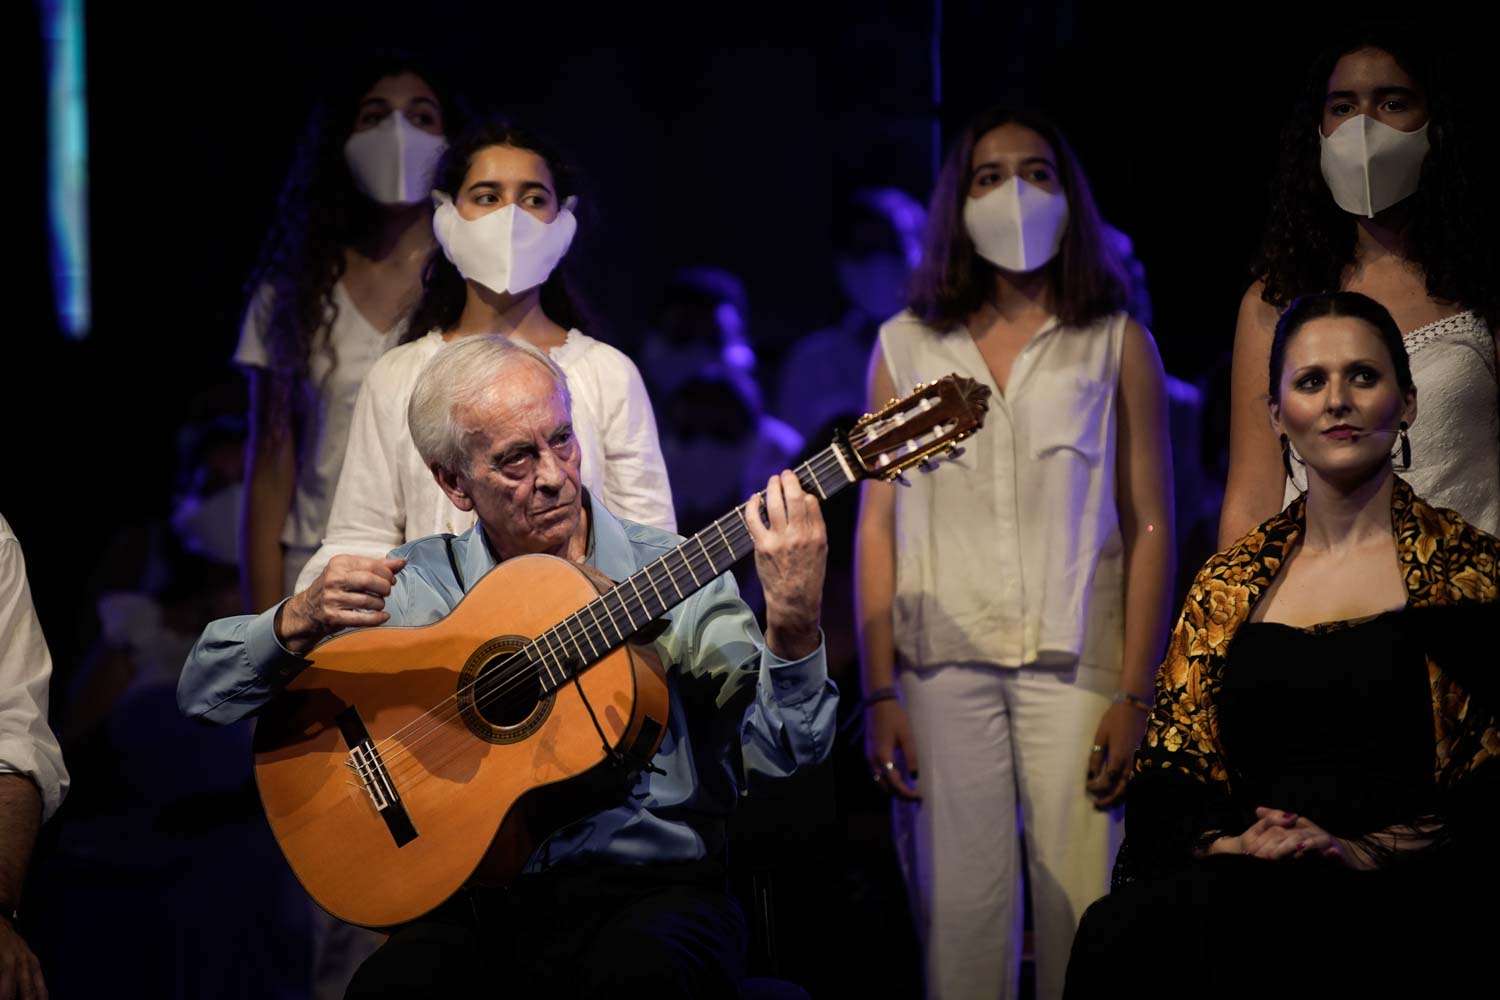 Clausura del Festival de la Guitarra de Córdoba con “Réquiem por la Tierra” de Paco Peña desde la Mezquita